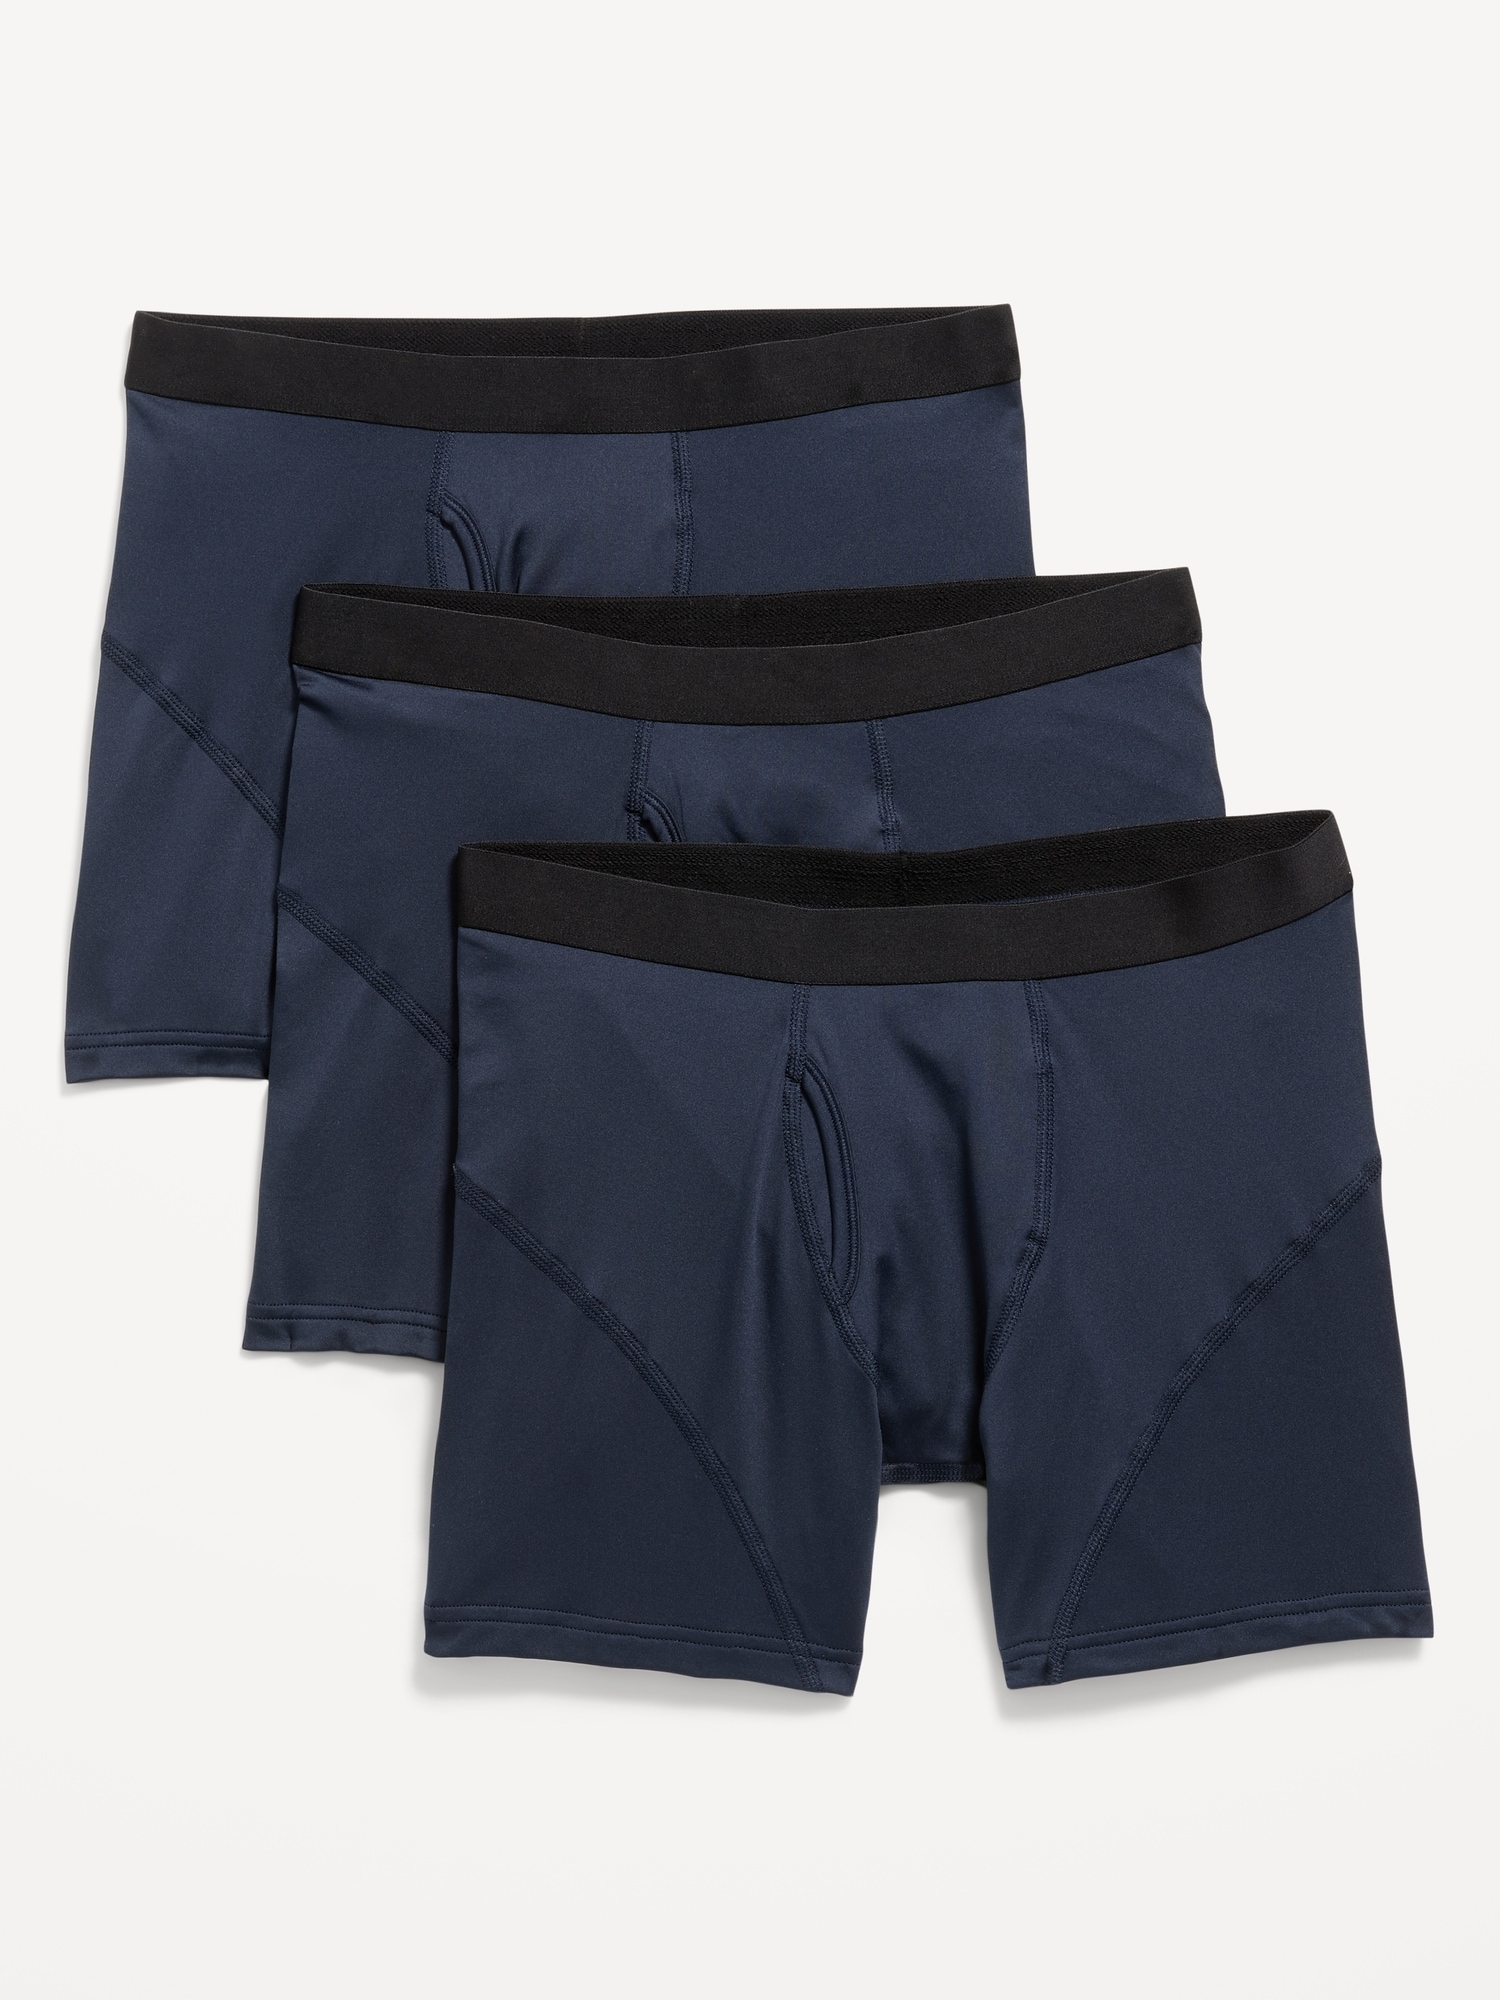 Go-Dry Cool Performance Boxer-Briefs Underwear 3-Pack -- 5-inch inseam